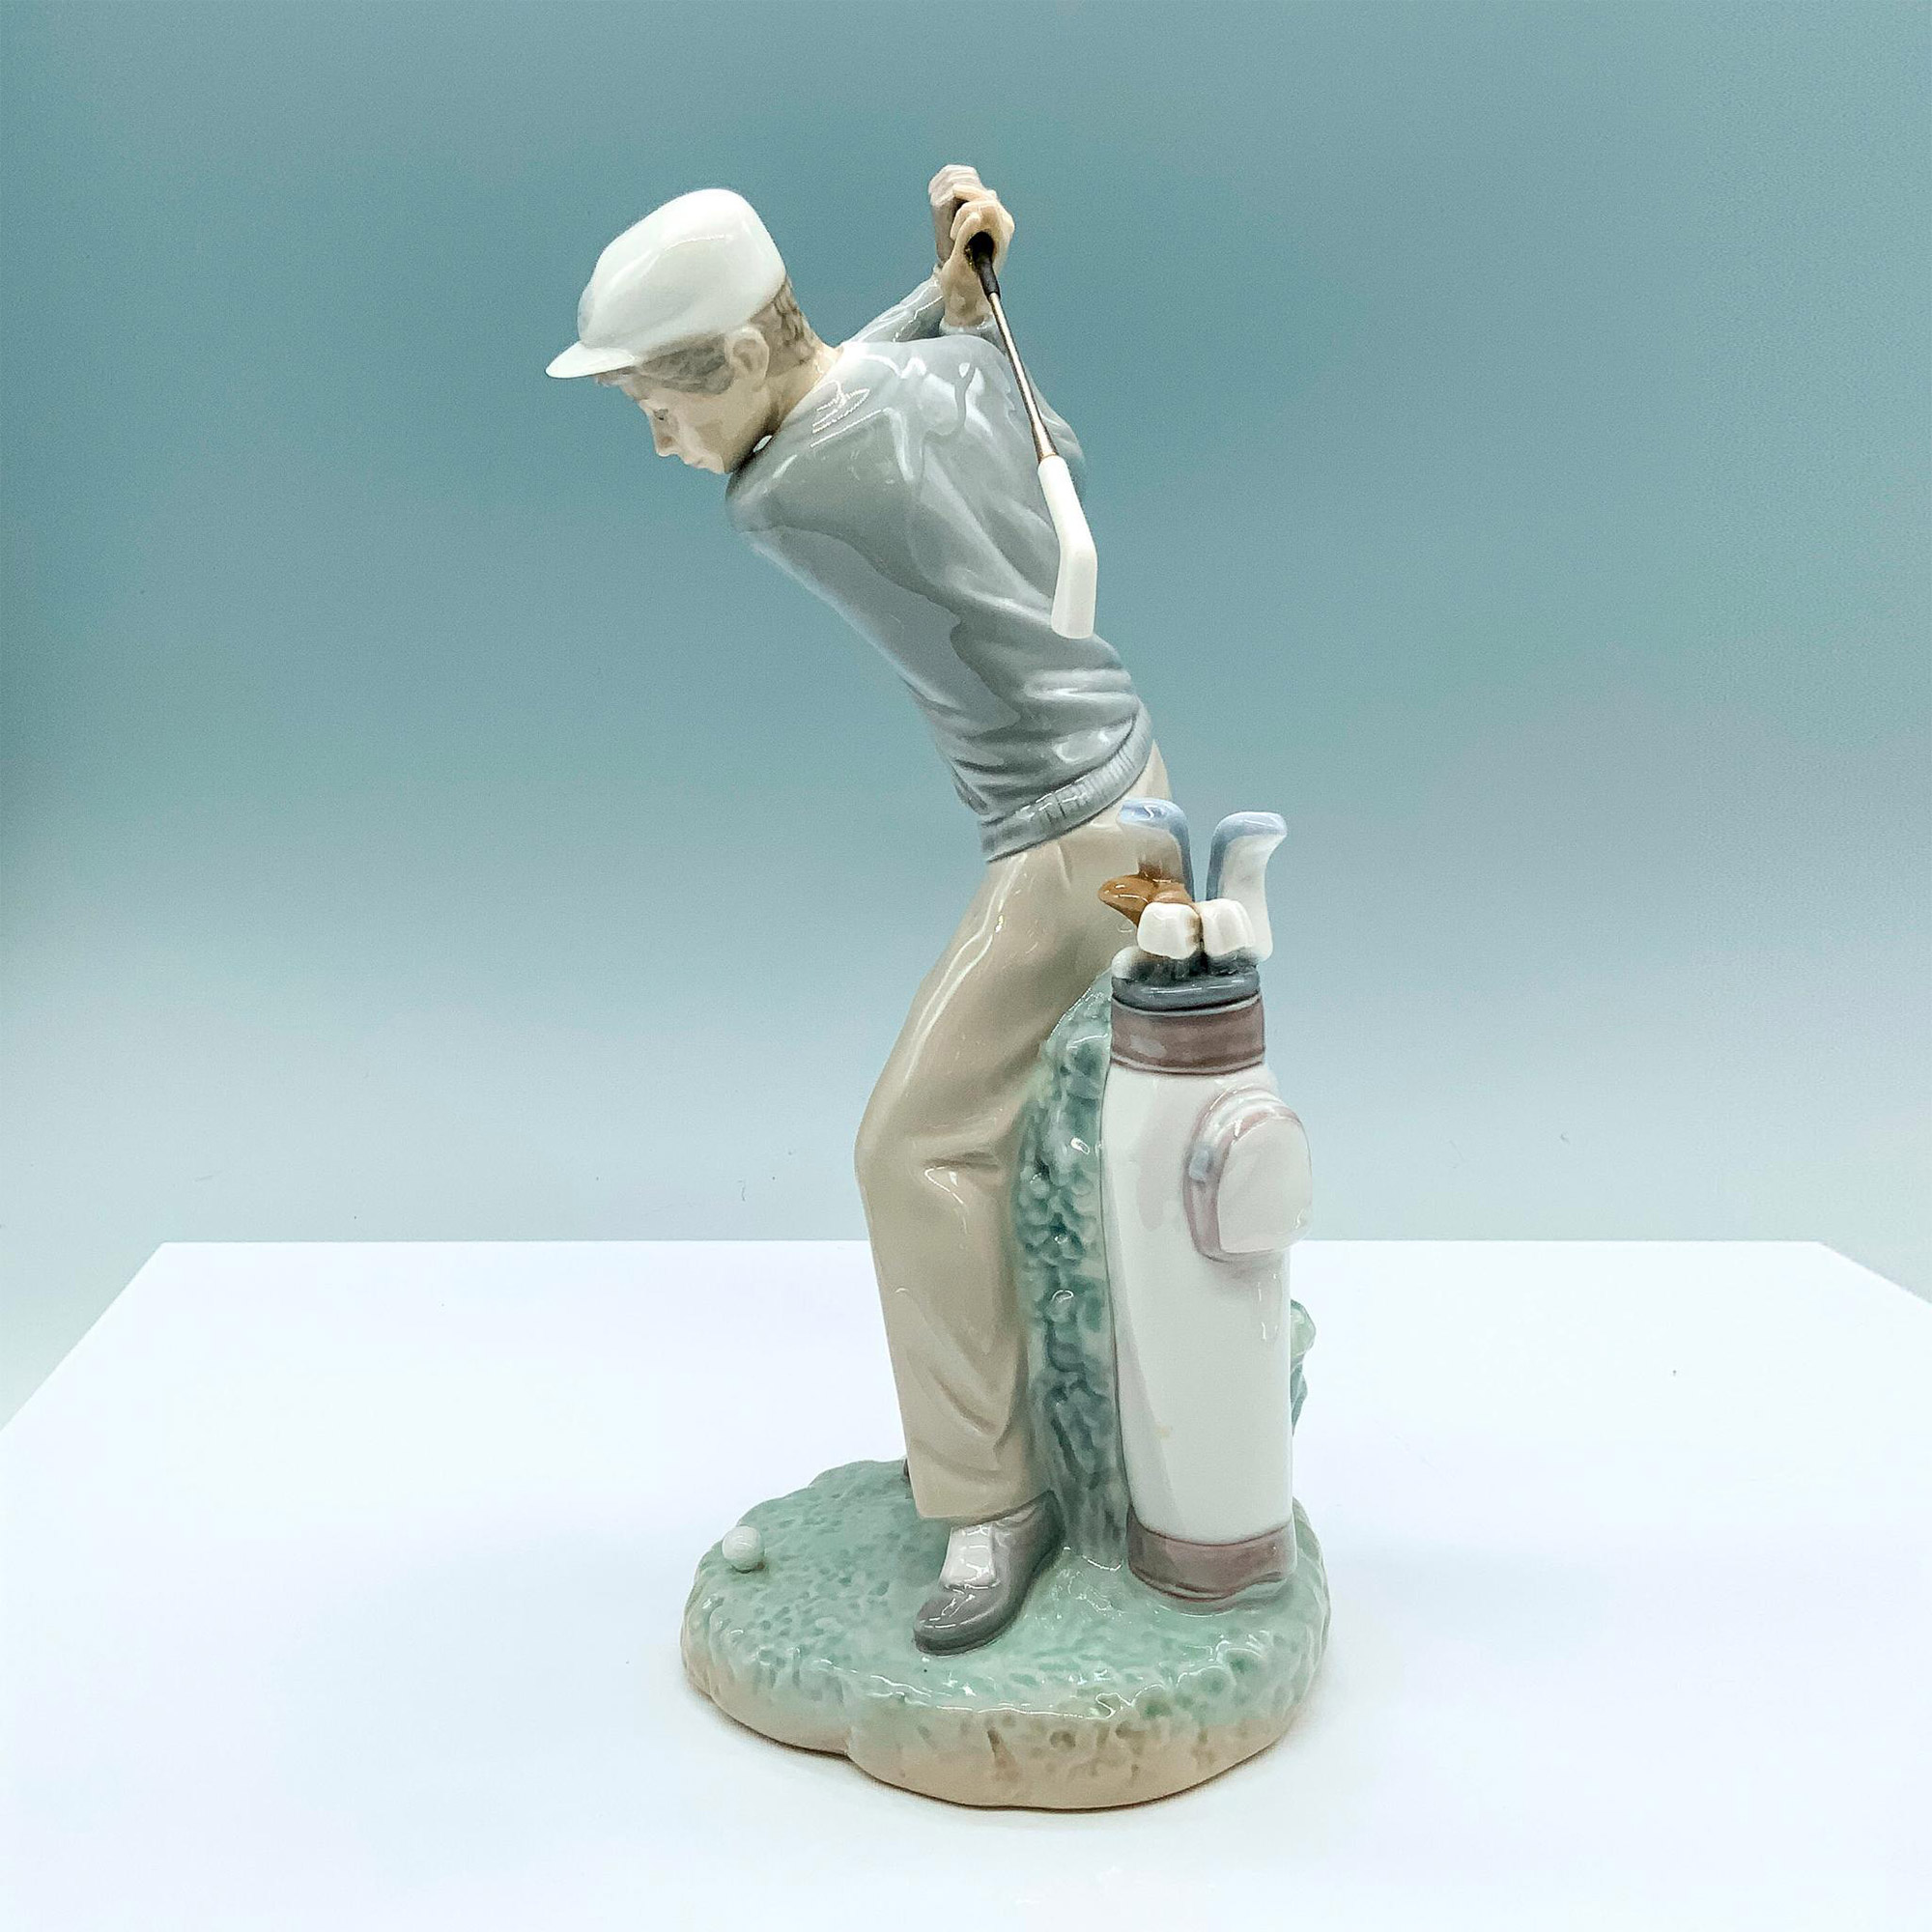 Golfer 1004824 - Lladro Porcelain Figurine - Image 4 of 5